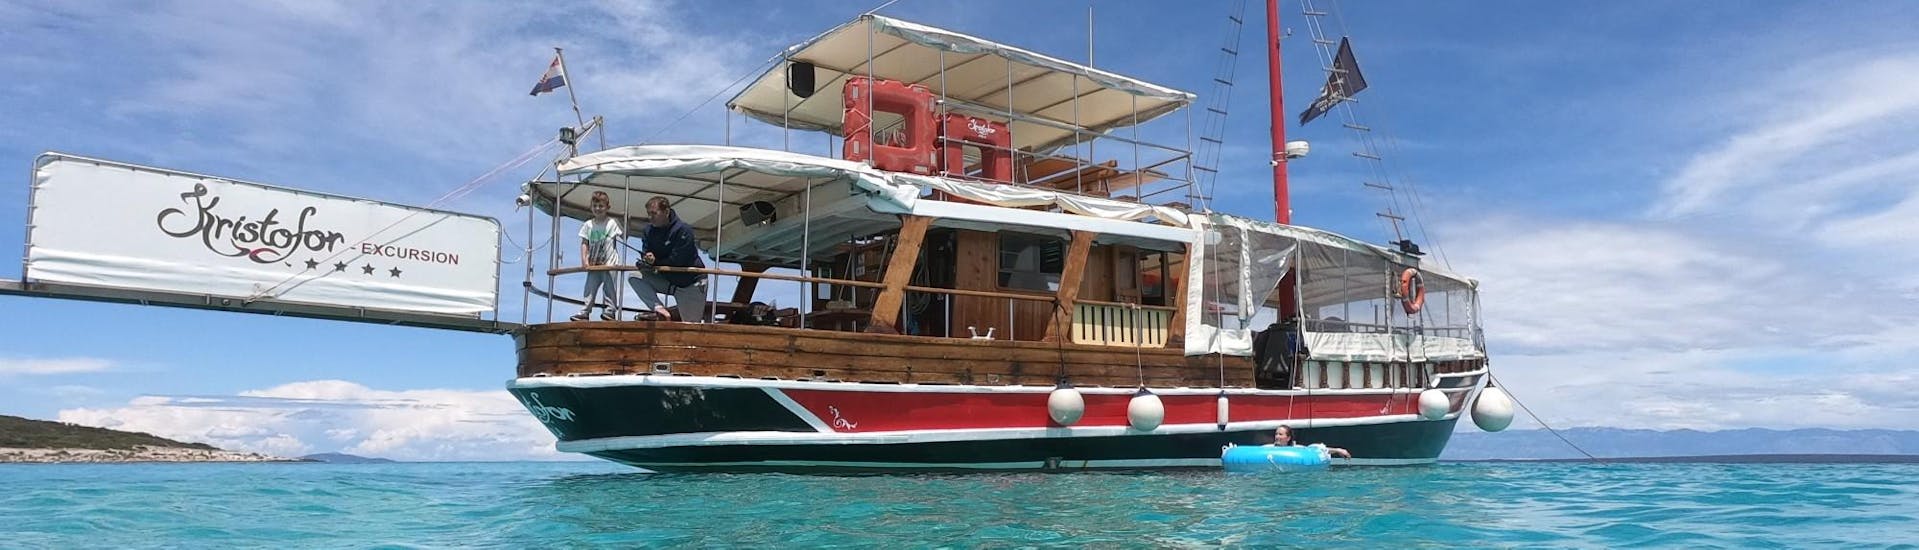 Das Boot von Kristofor Boat Excursions Poreč ankert im türkisfarbenen Wasser der istrischen Westküste.